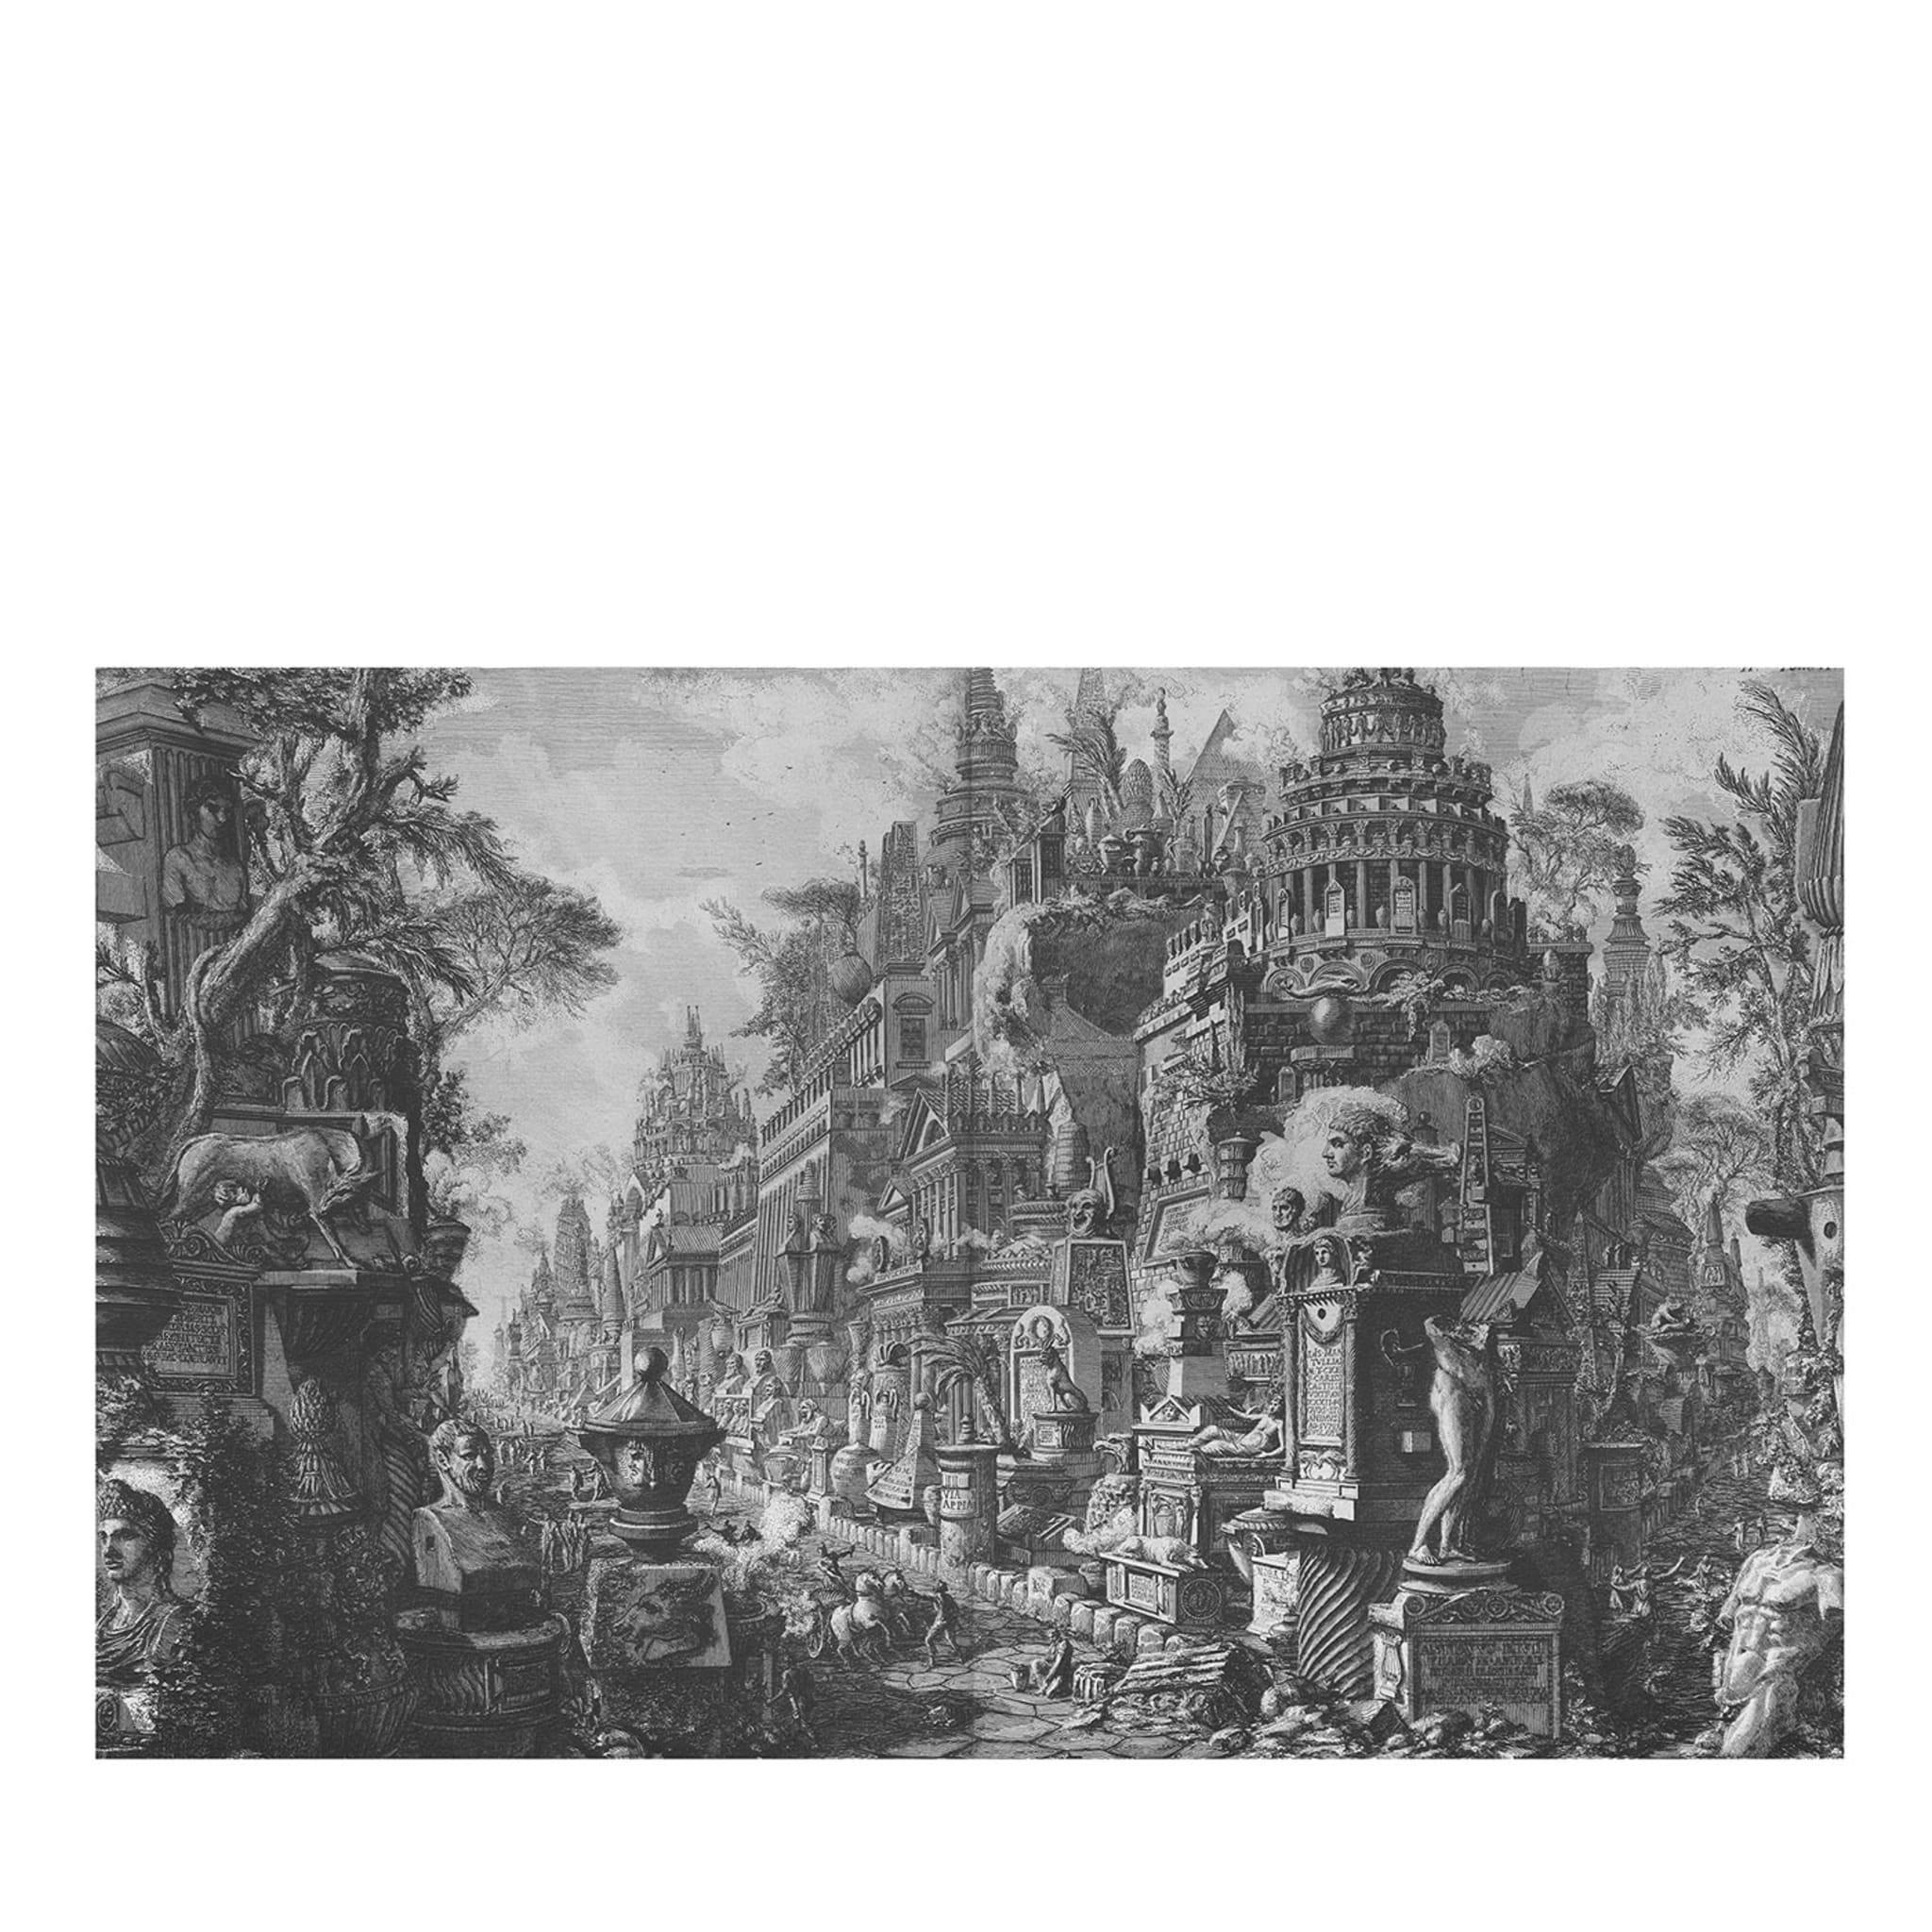 07 Papel pintado Parlanti Ruine - Vista principal